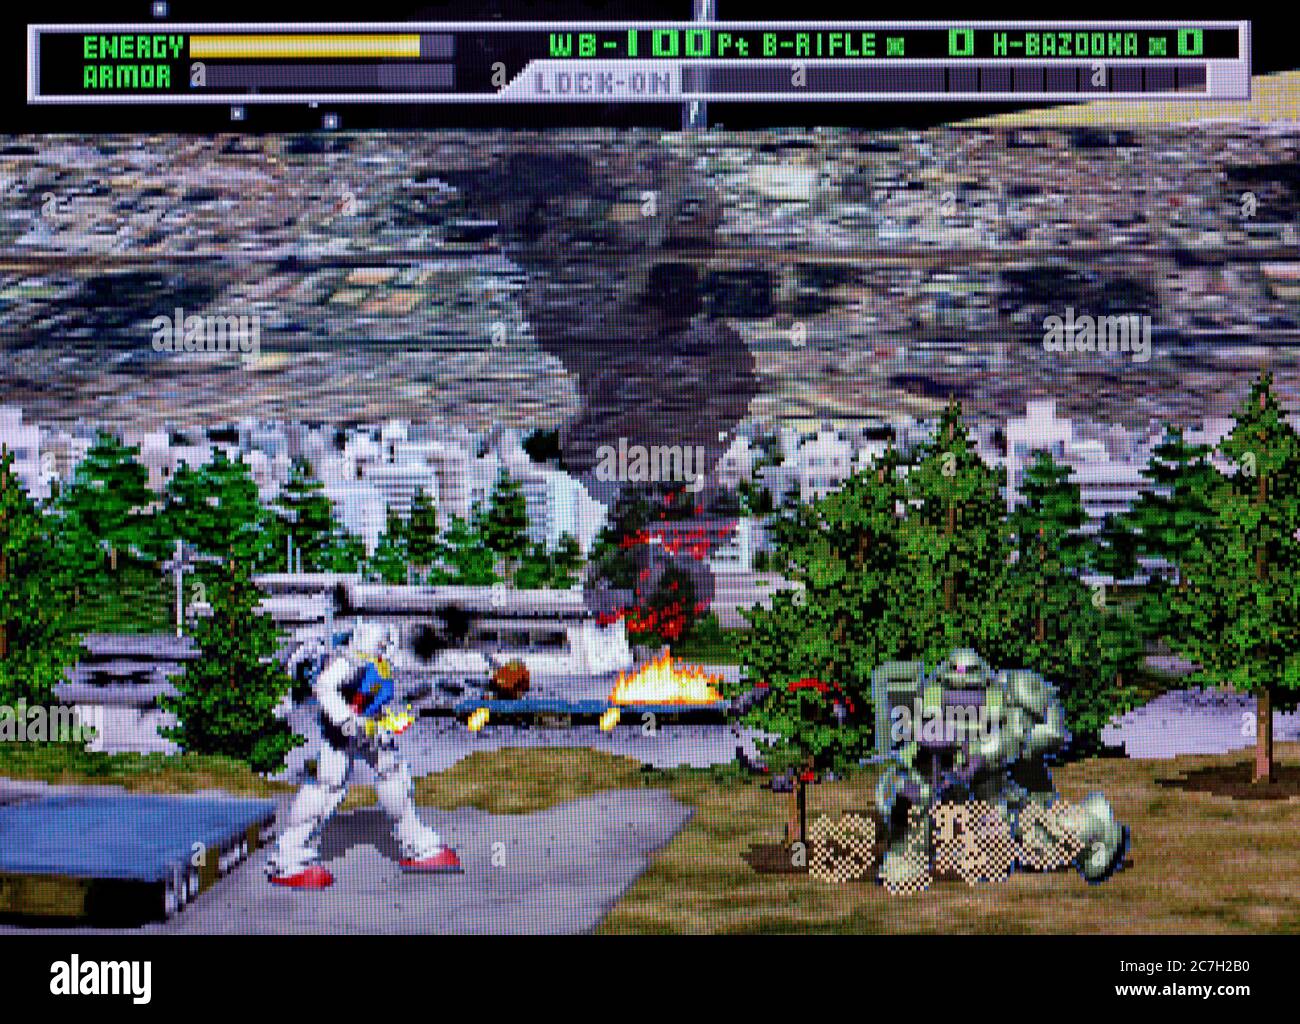 Combinaison mobile Gundam - Sega Saturn Videogame - usage éditorial seulement Banque D'Images